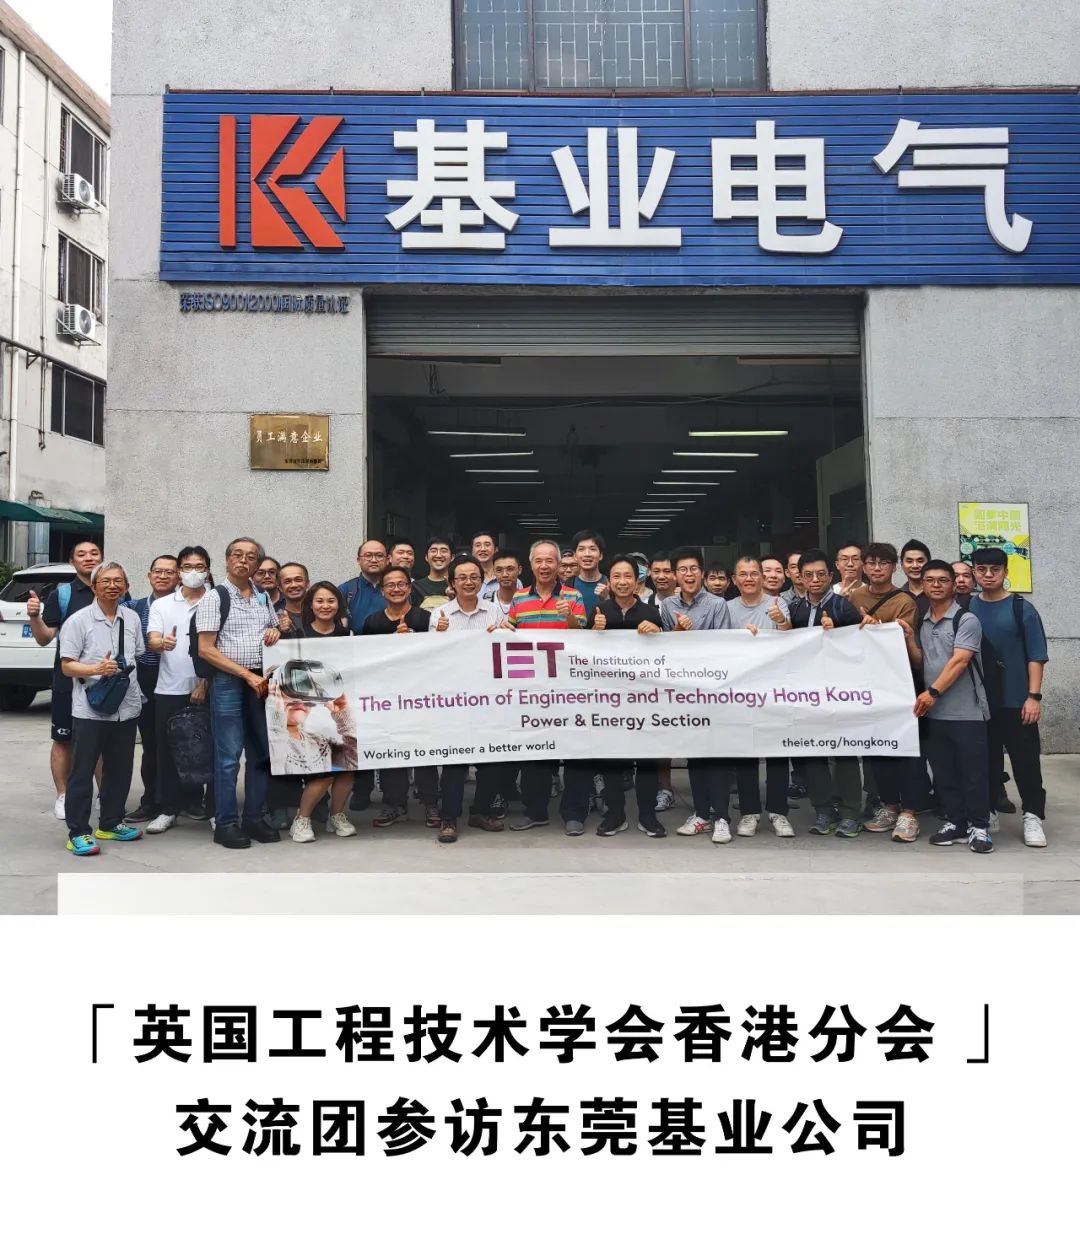 「英国工程技术学会香港分会 」交流团参访东莞基业电气设备有限公司